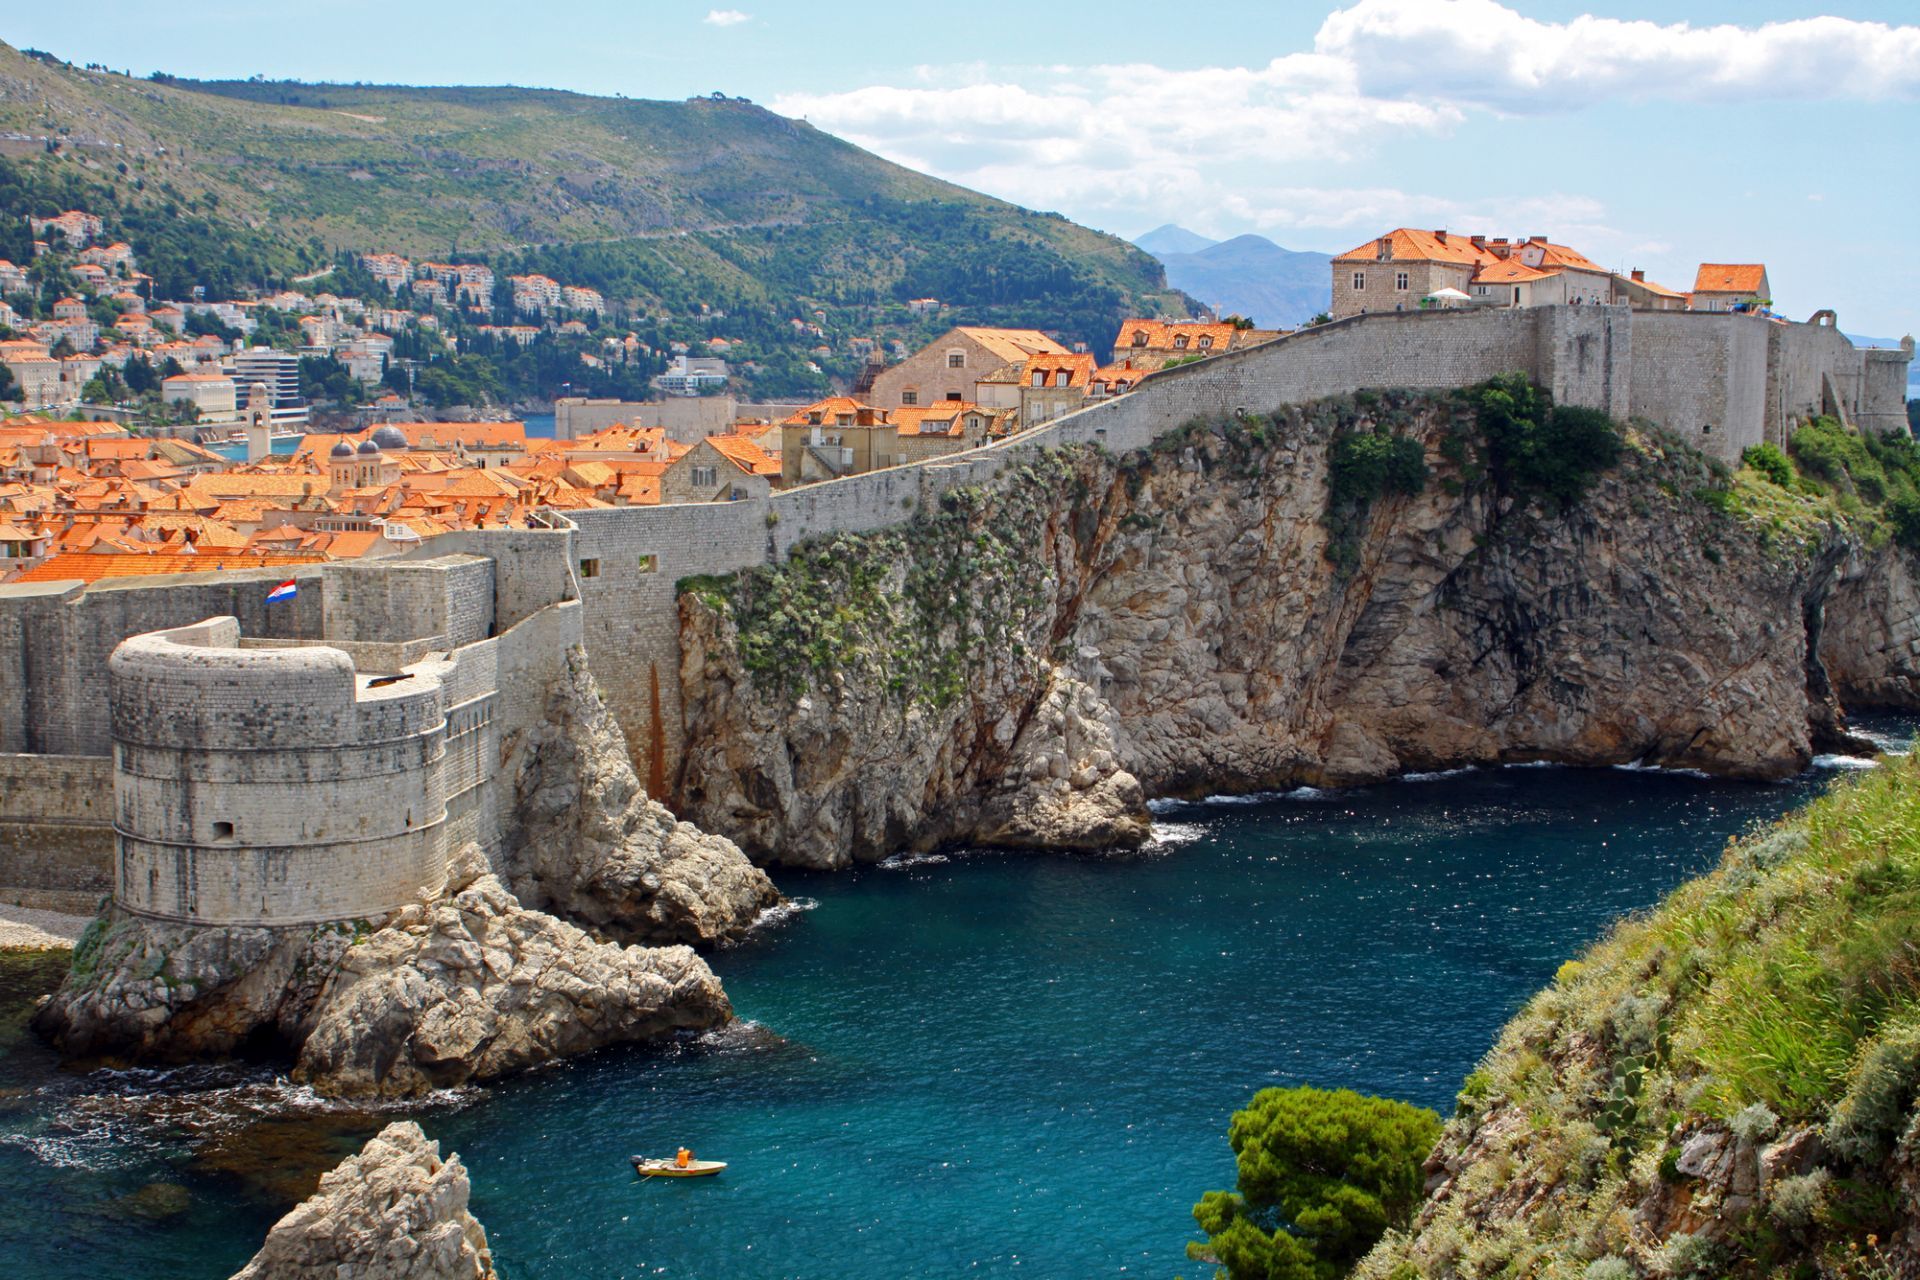 Transfers in Dubrovnik